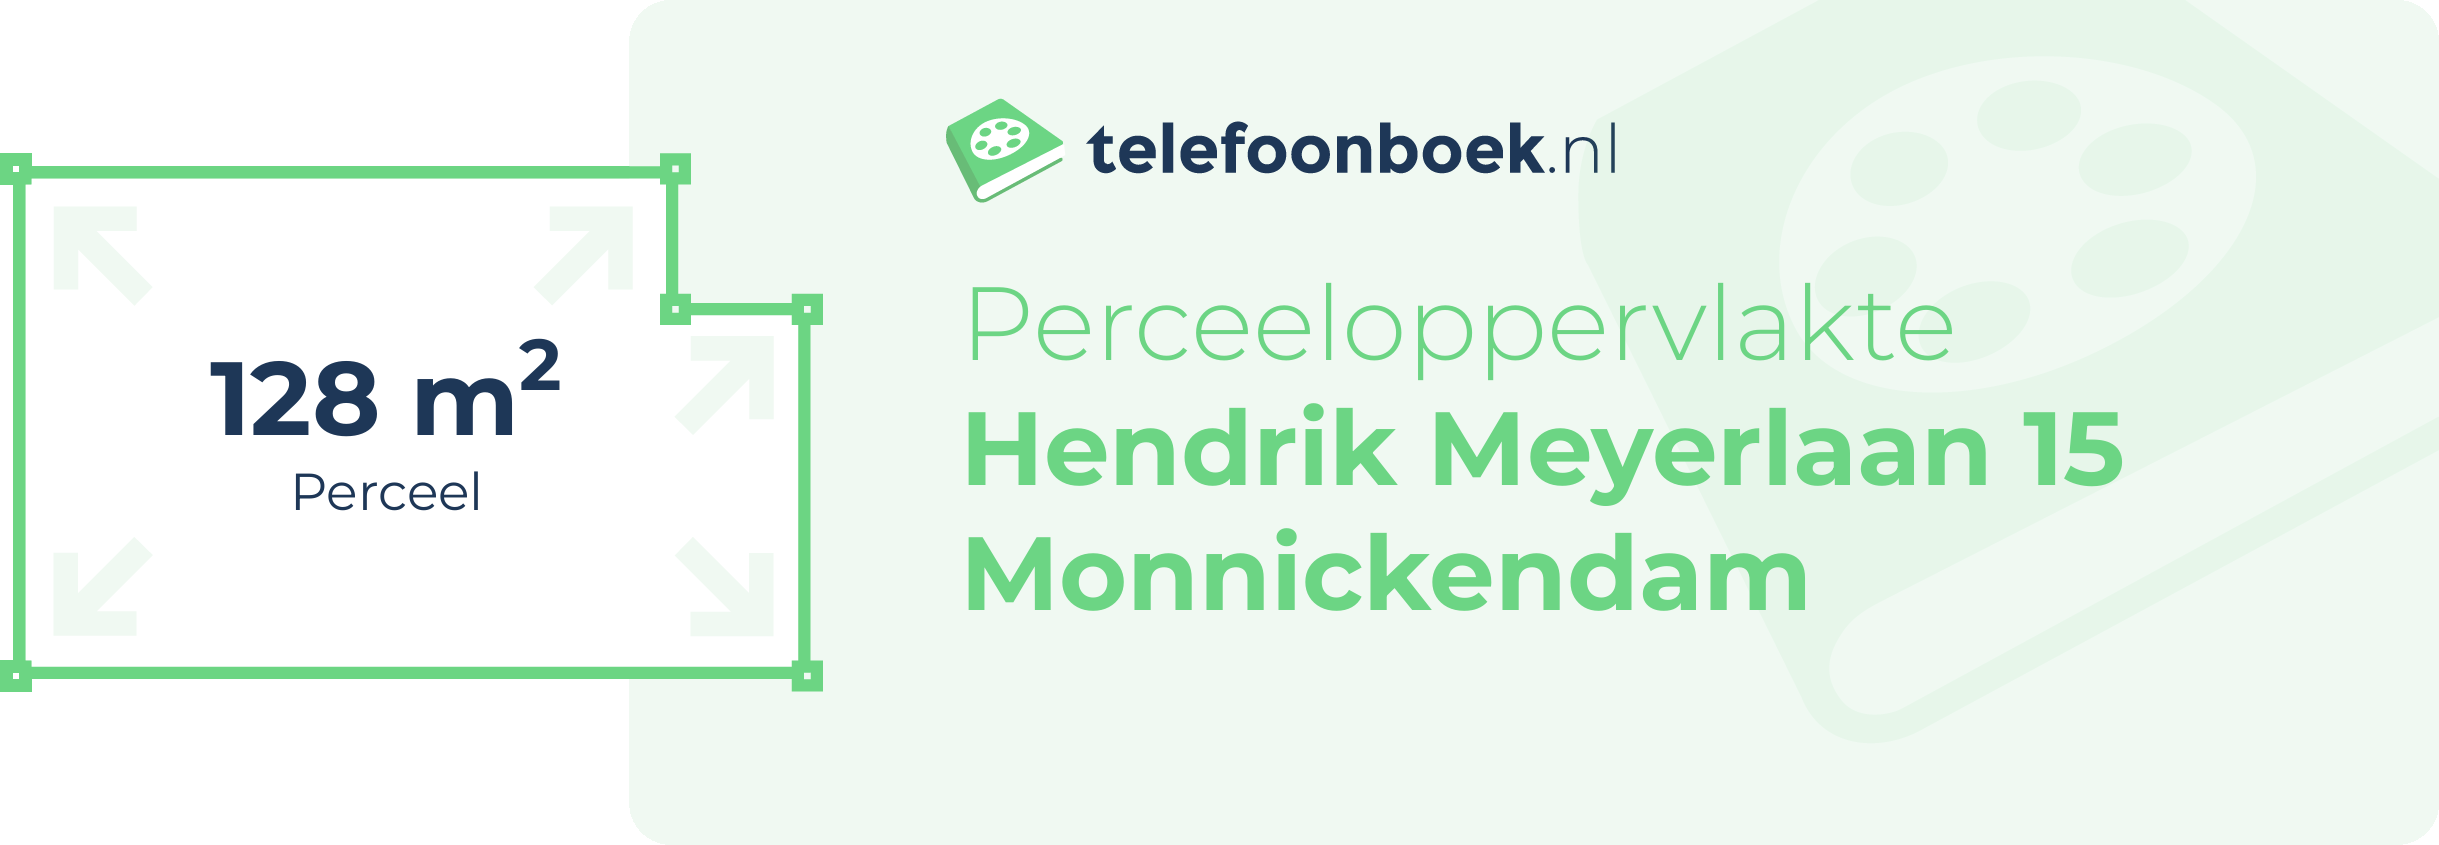 Perceeloppervlakte Hendrik Meyerlaan 15 Monnickendam